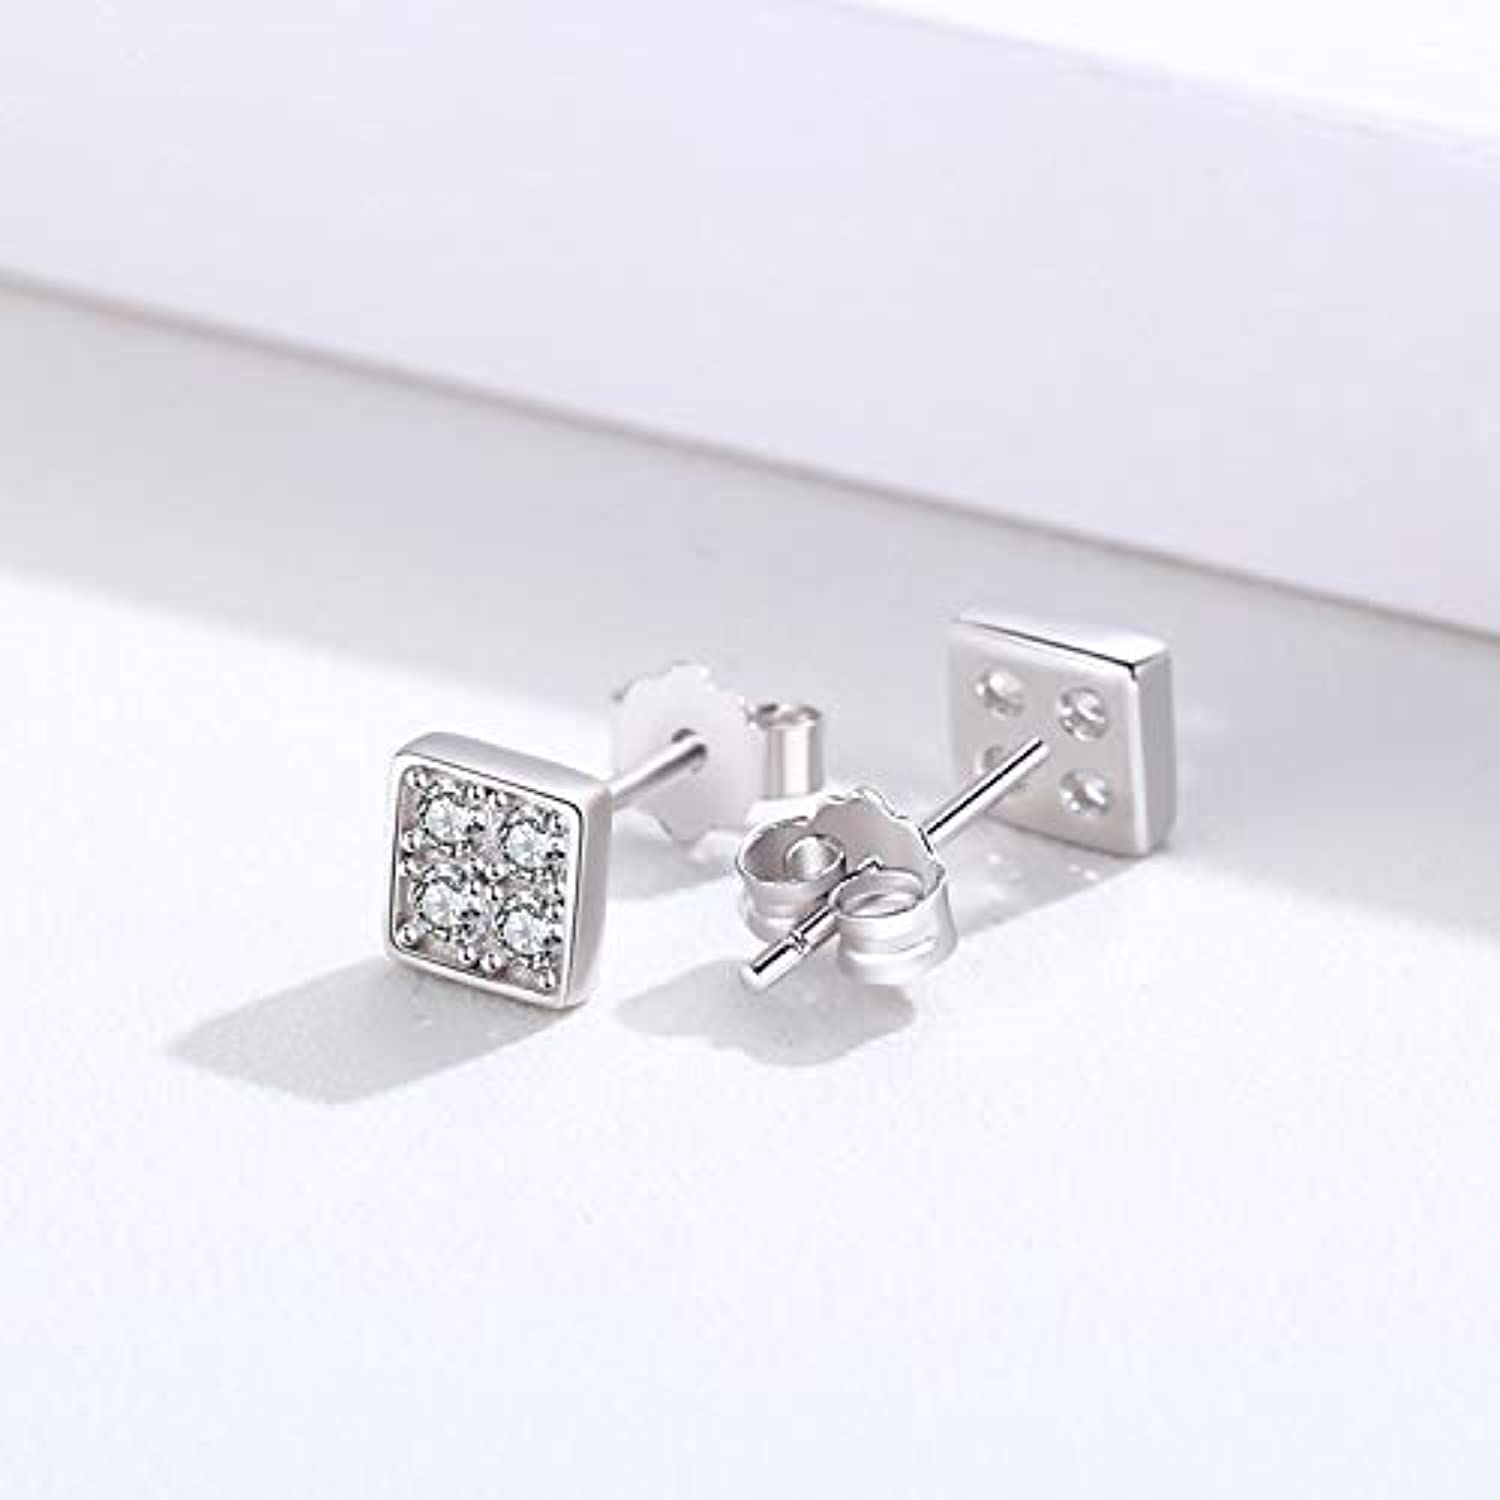 S925 Sterling Silver Square Cubic Zircon Stud Earrings for Women Men